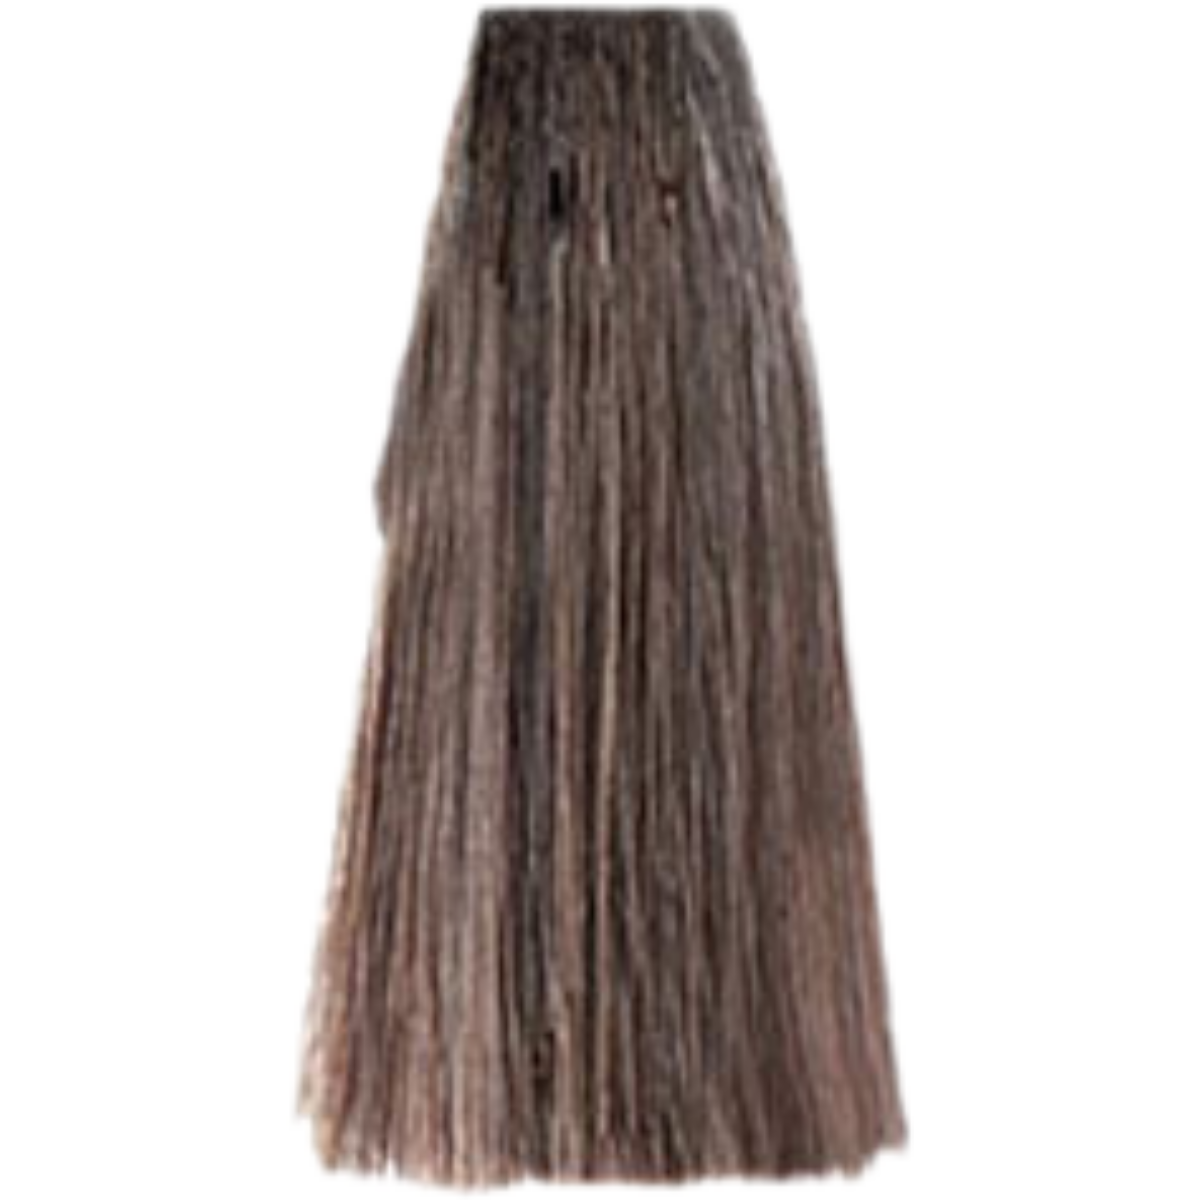 צבע שיער 9.1 VERY LIGHT ASH BLONDE פארמויטה FarmaVita צבע לשיער 100 גרם